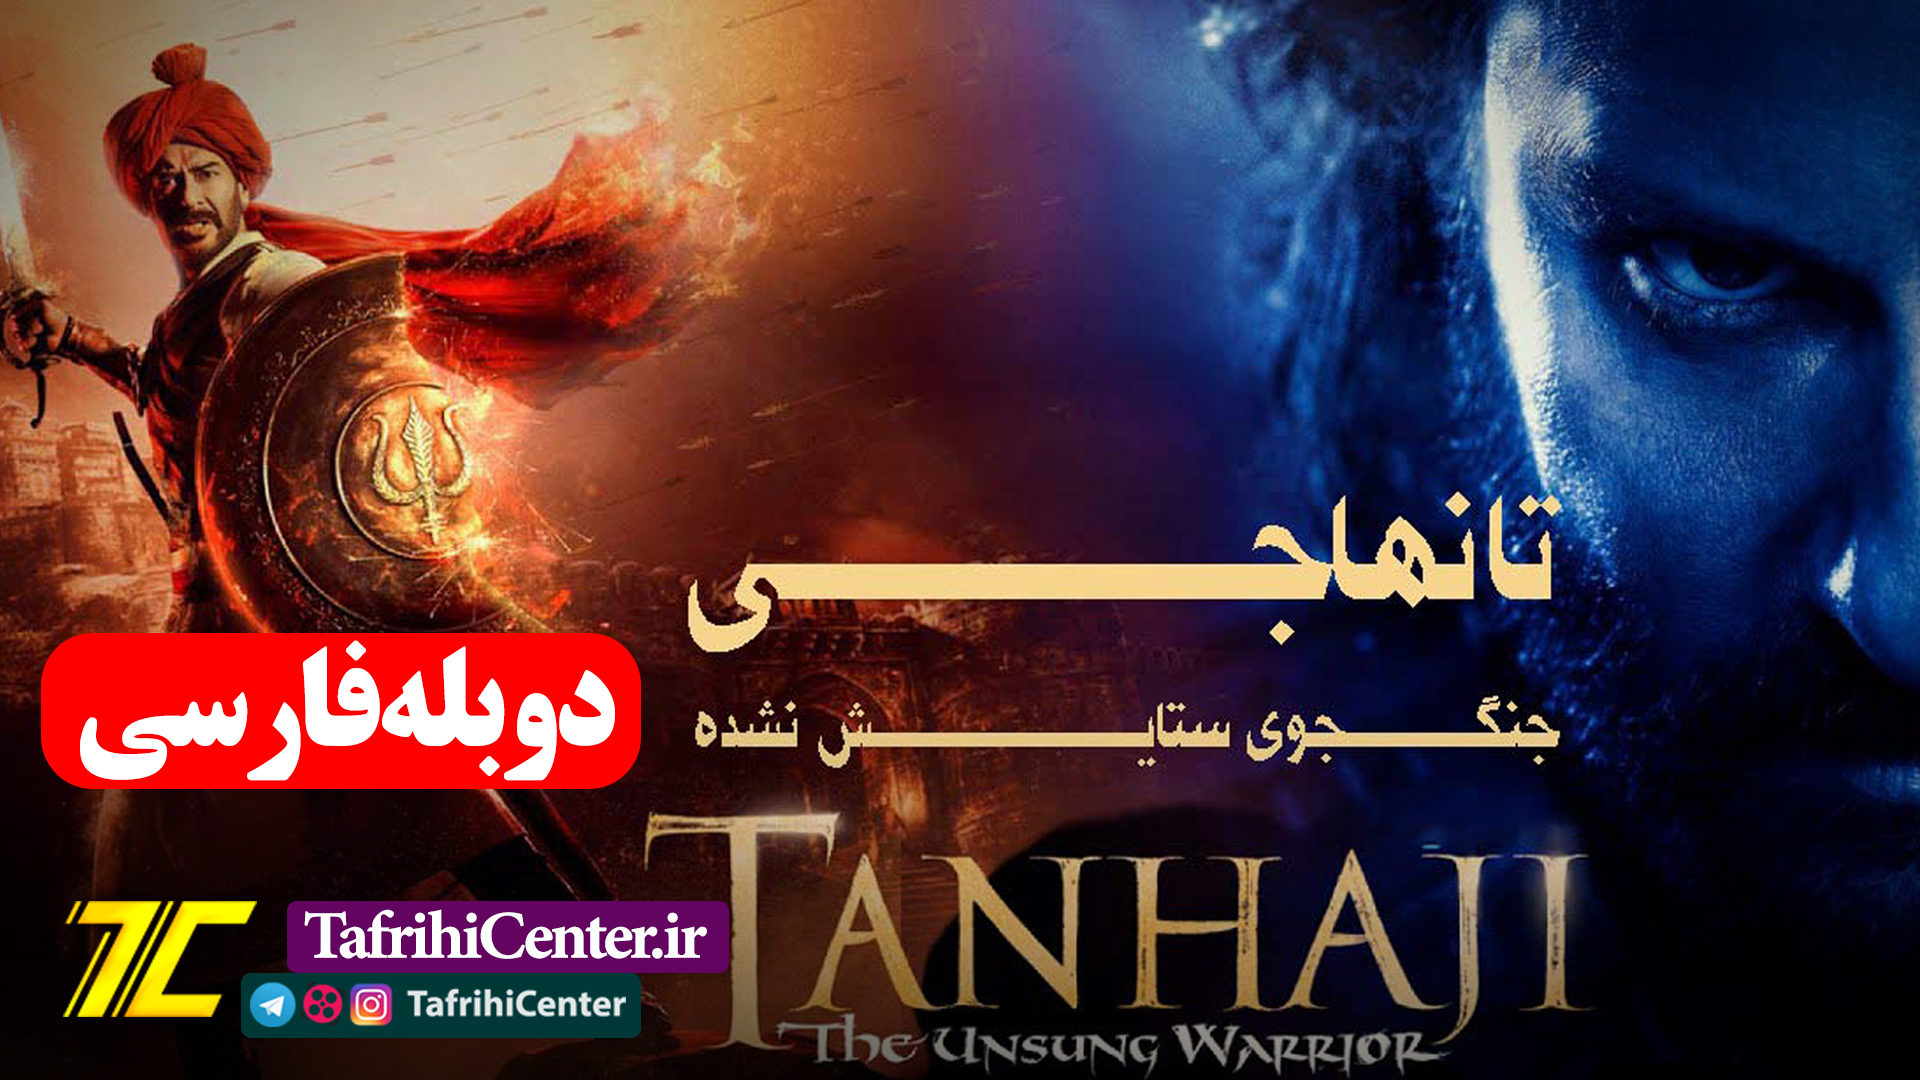 فیلم تانهاجی: جنگجوی ستایش نشده "با دوبله فارسی" | Tanhaji: The Unsung Warrior 2020